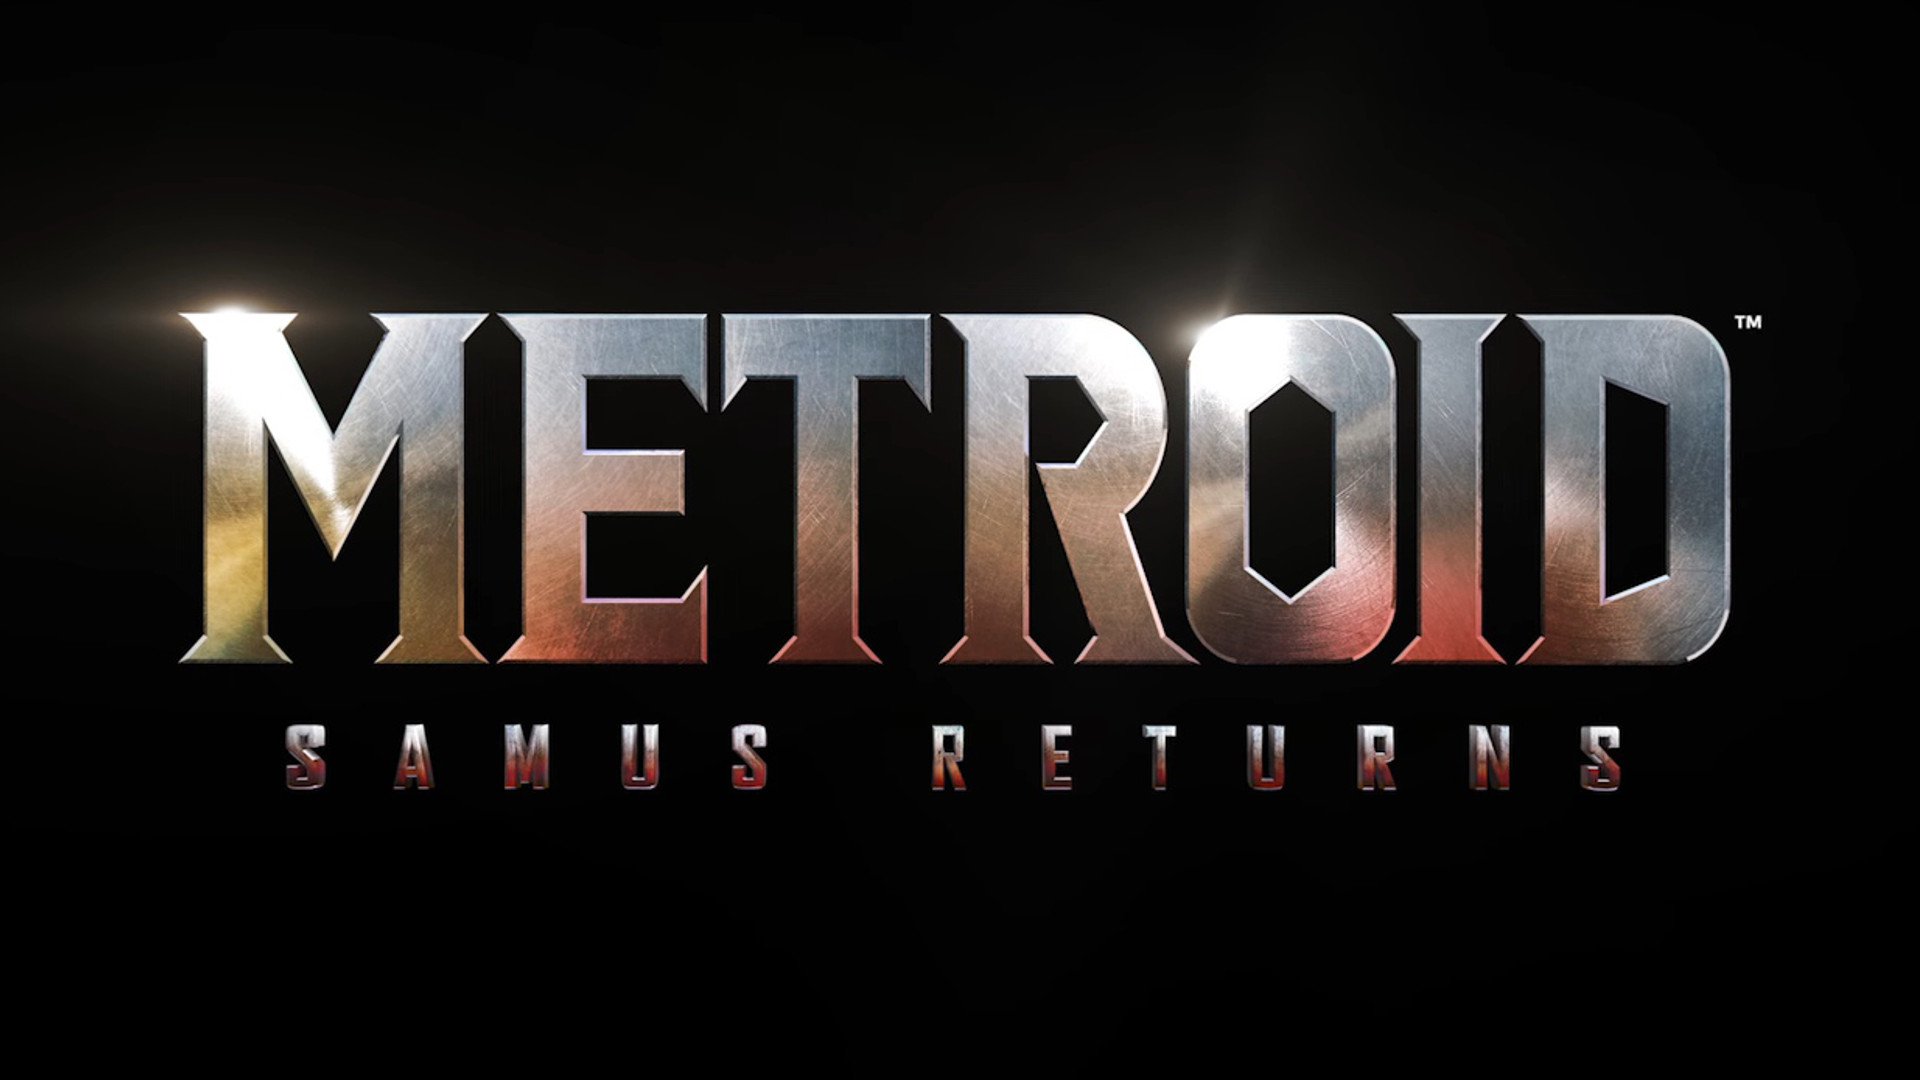 Video Game Metroid: Samus Returns HD Wallpaper | Background Image